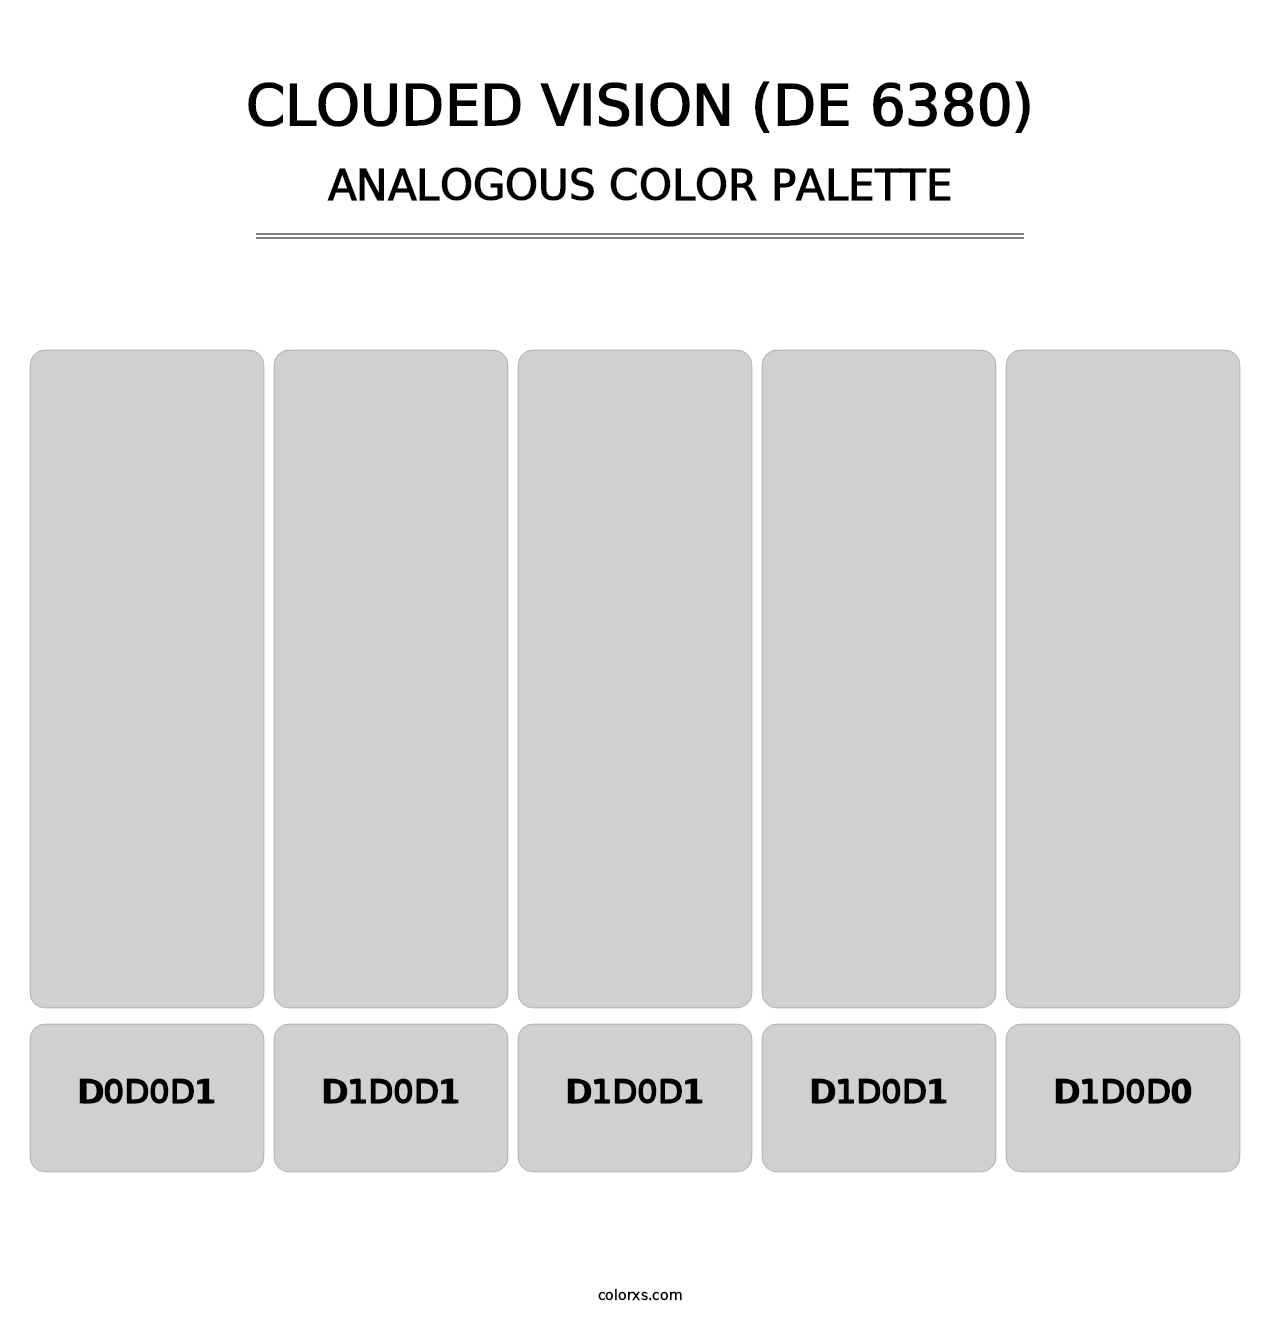 Clouded Vision (DE 6380) - Analogous Color Palette